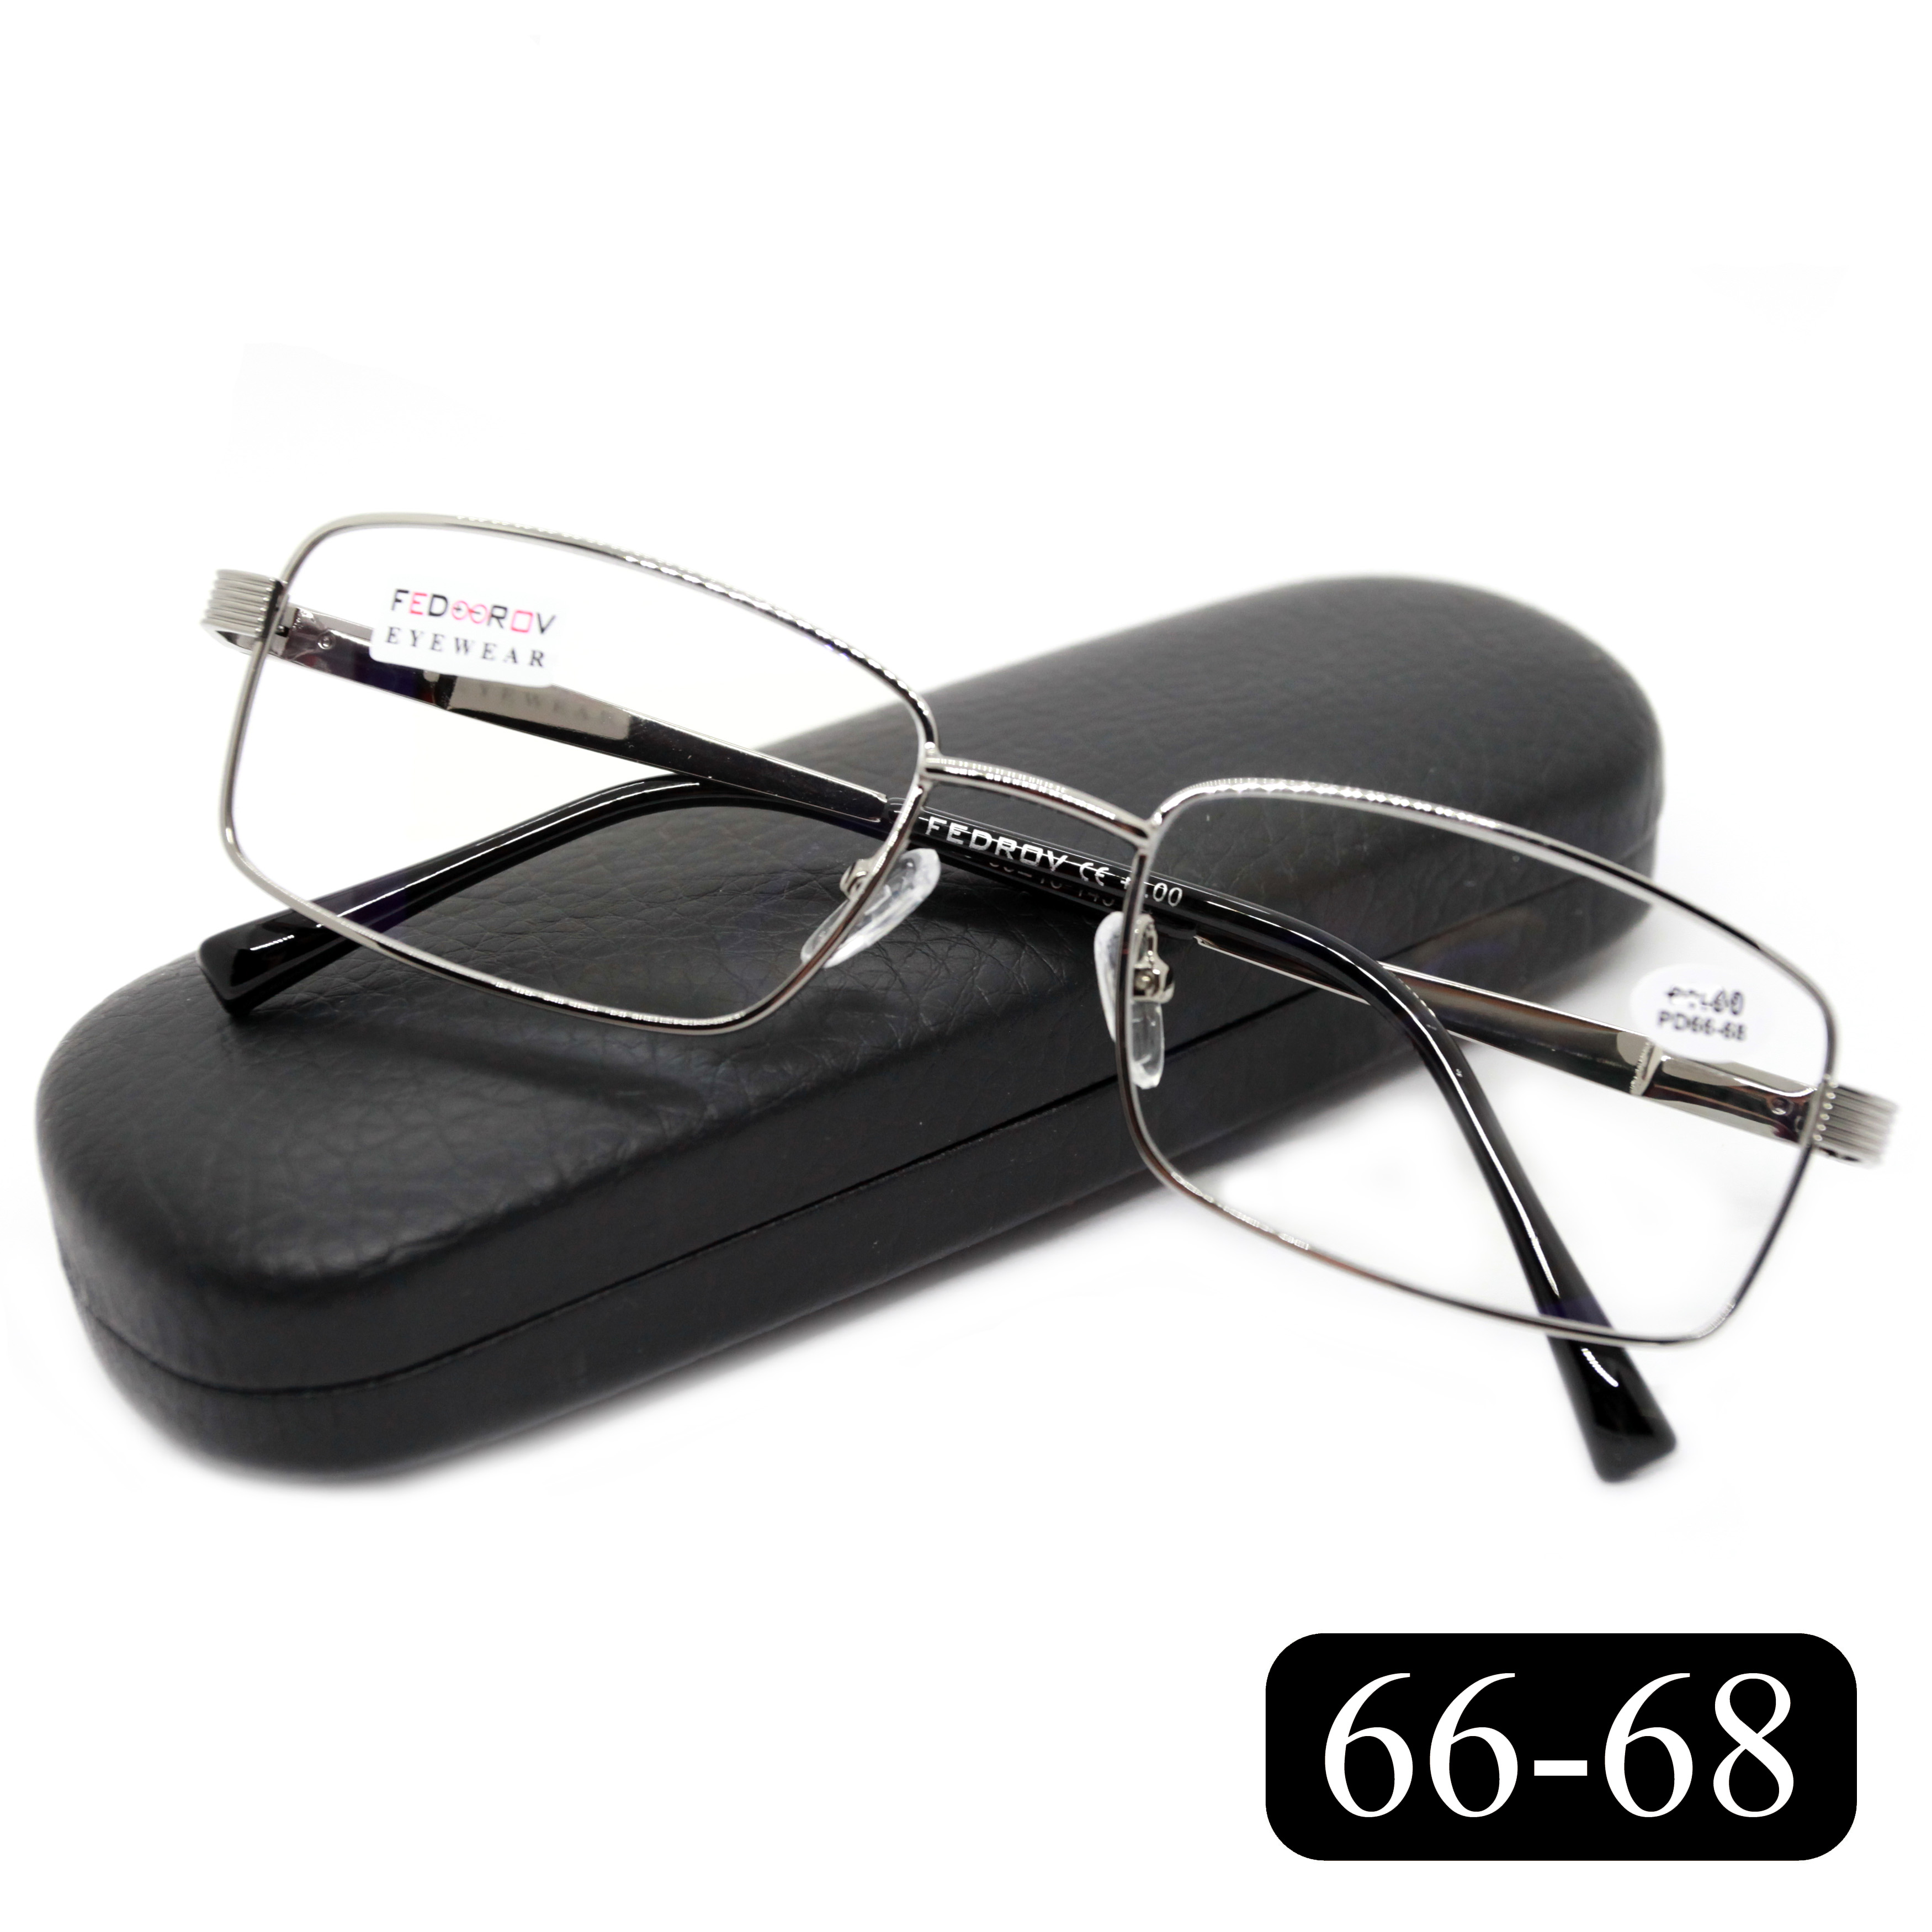 Готовые очки Fedrov 556 +3,75, c футляром, с антибликом, серебристый, РЦ 66-68